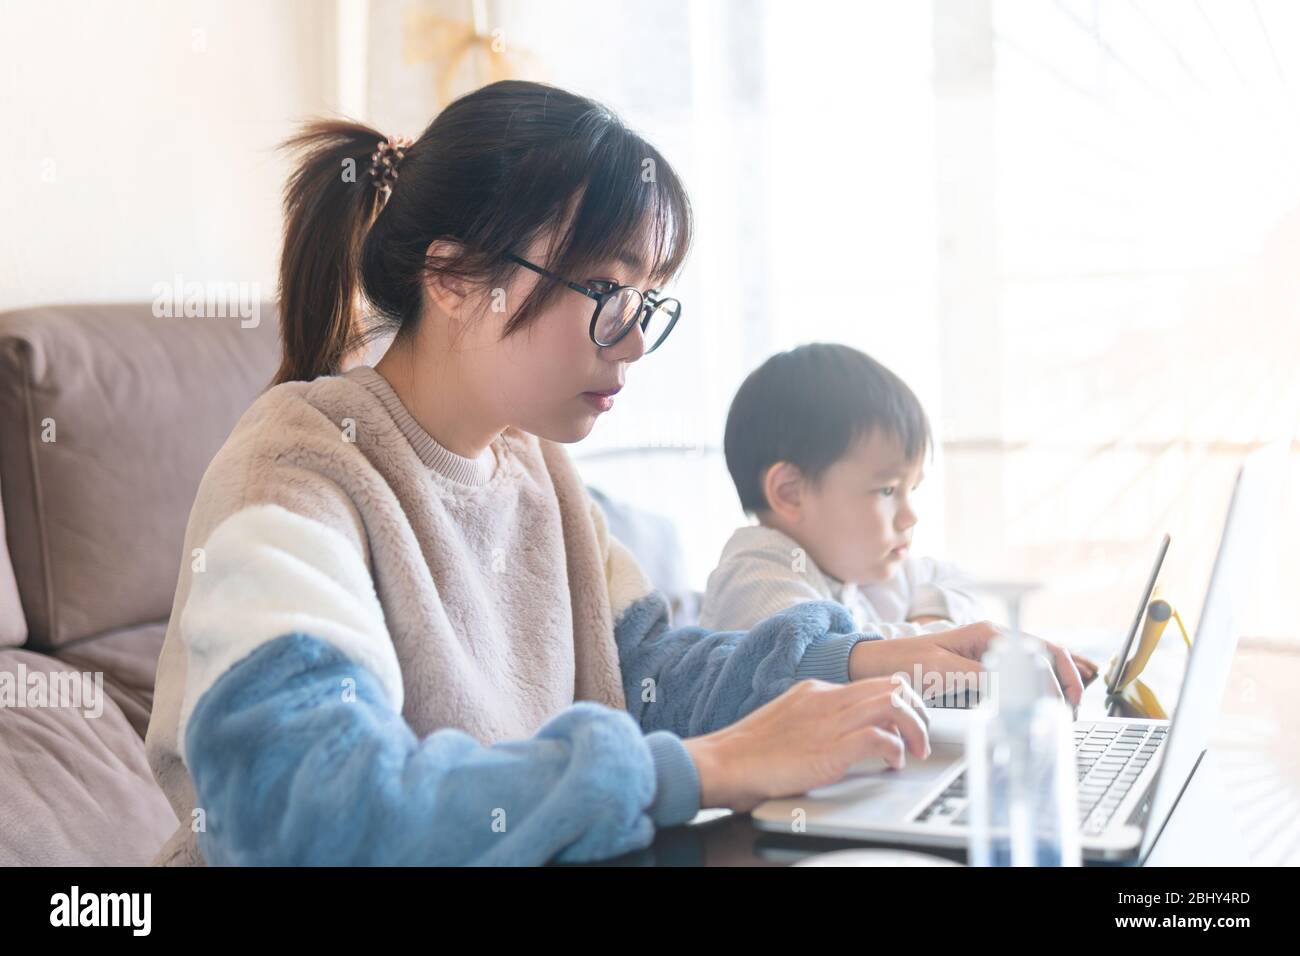 Jeune mère asiatique travaillant à domicile sur ordinateur. Un enfant regarde un dessin animé sur une tablette tandis que sa mère travaille sur un ordinateur portable pendant le blocage de la pandémie du coronavirus Banque D'Images